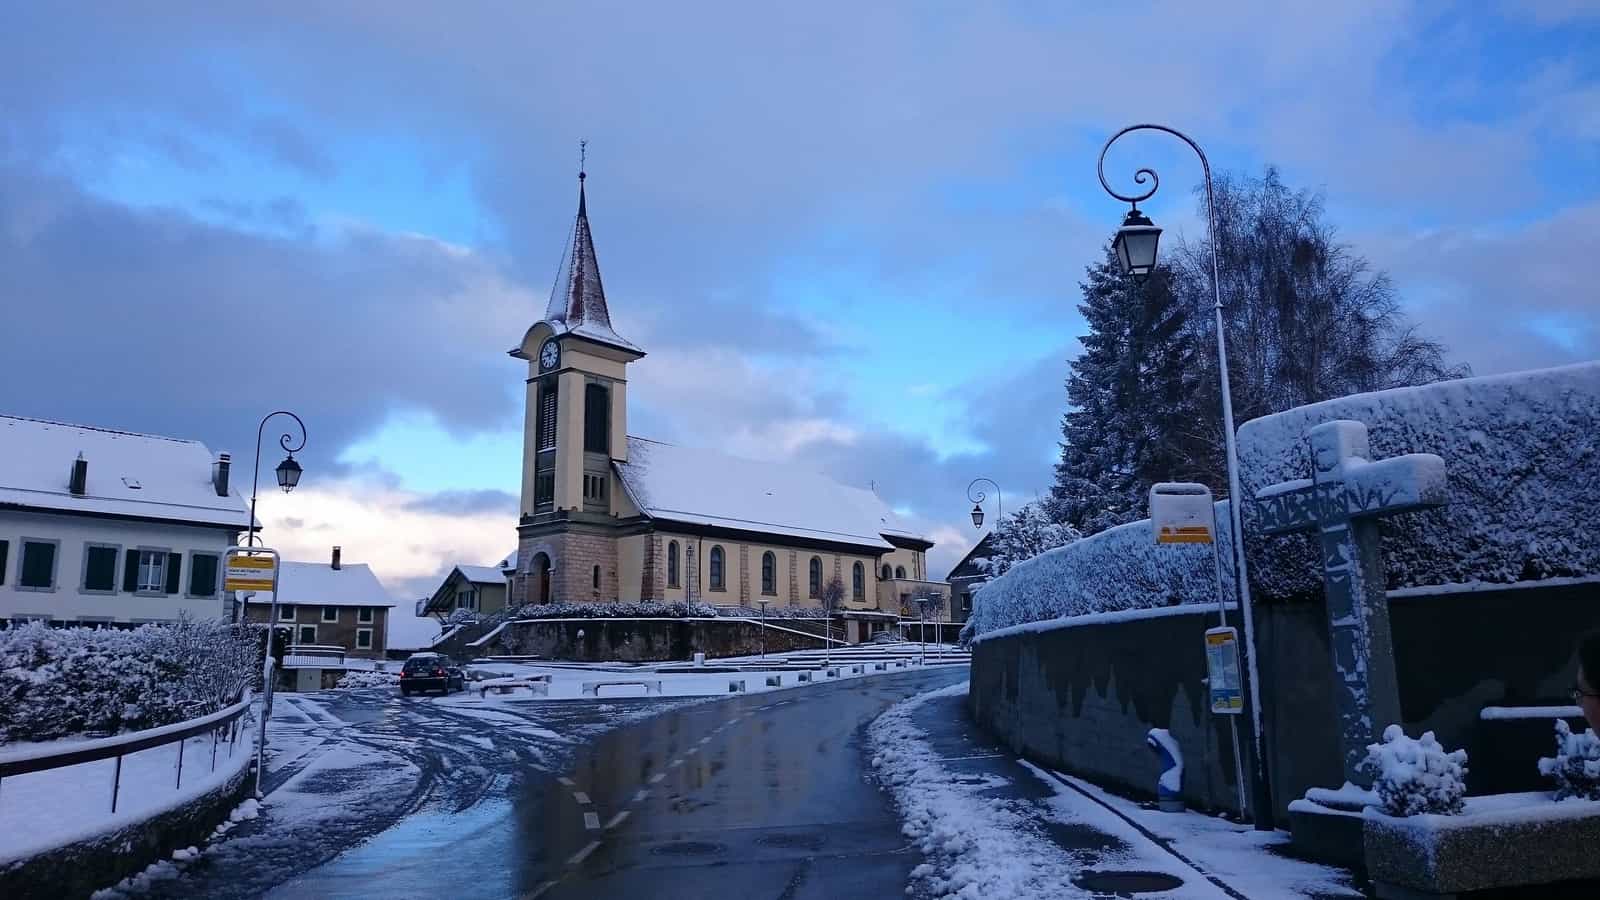 Kirche Saint-Nicolas de Myre in Villars-le-Terroir, Waadt, Schweiz.